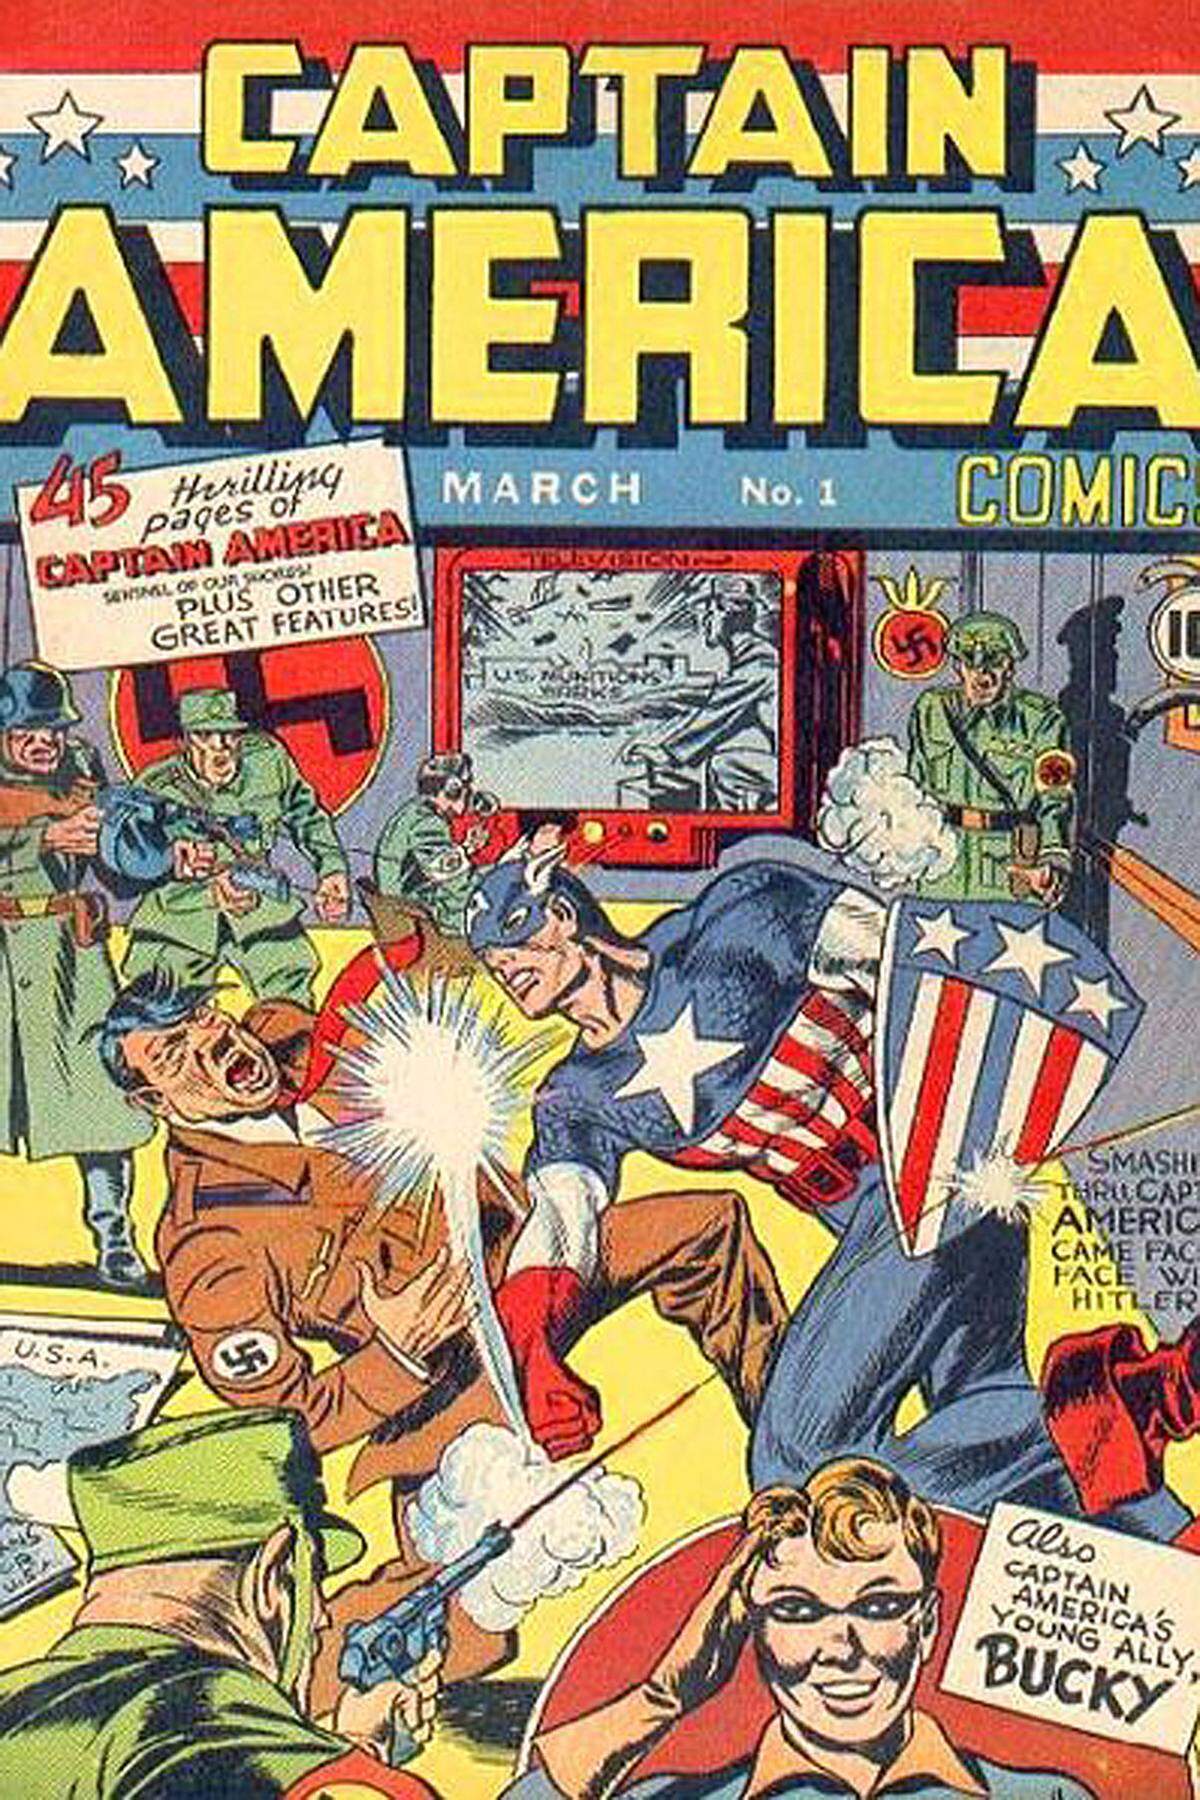 Im August 2011 lief die bislang letzte Marvel-Comicverfilmung in den Kinos an: "Captain America". Damit endete (vorläufig) eine ganze Serie an Produktionen, die 2012 in "The Avengers" mündet.1941 erschien das erste Heft der Comicserie "Captain America Comics".